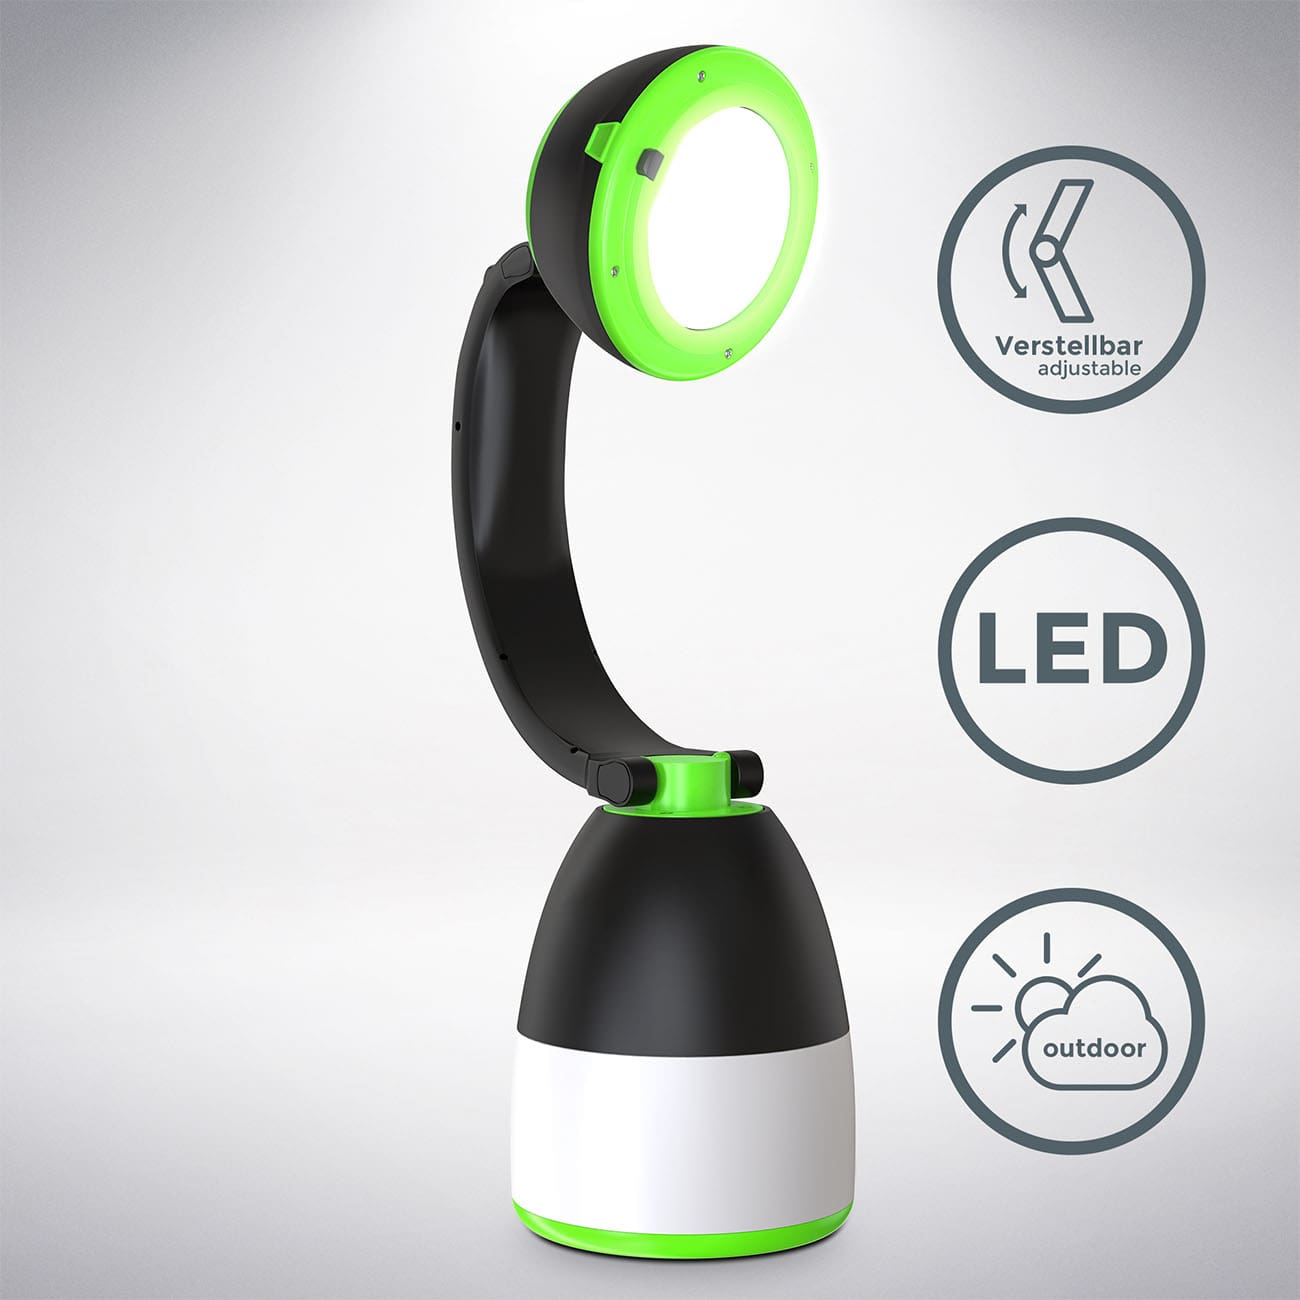 LED Outdoor-Taschenlampe 13x8x15,5 cm - 3 in 1 - Campingleuchte Tisch-Laterne 2 Helligkeitsstufen klappbar batteriebetrieben | grün-schwarz - 3